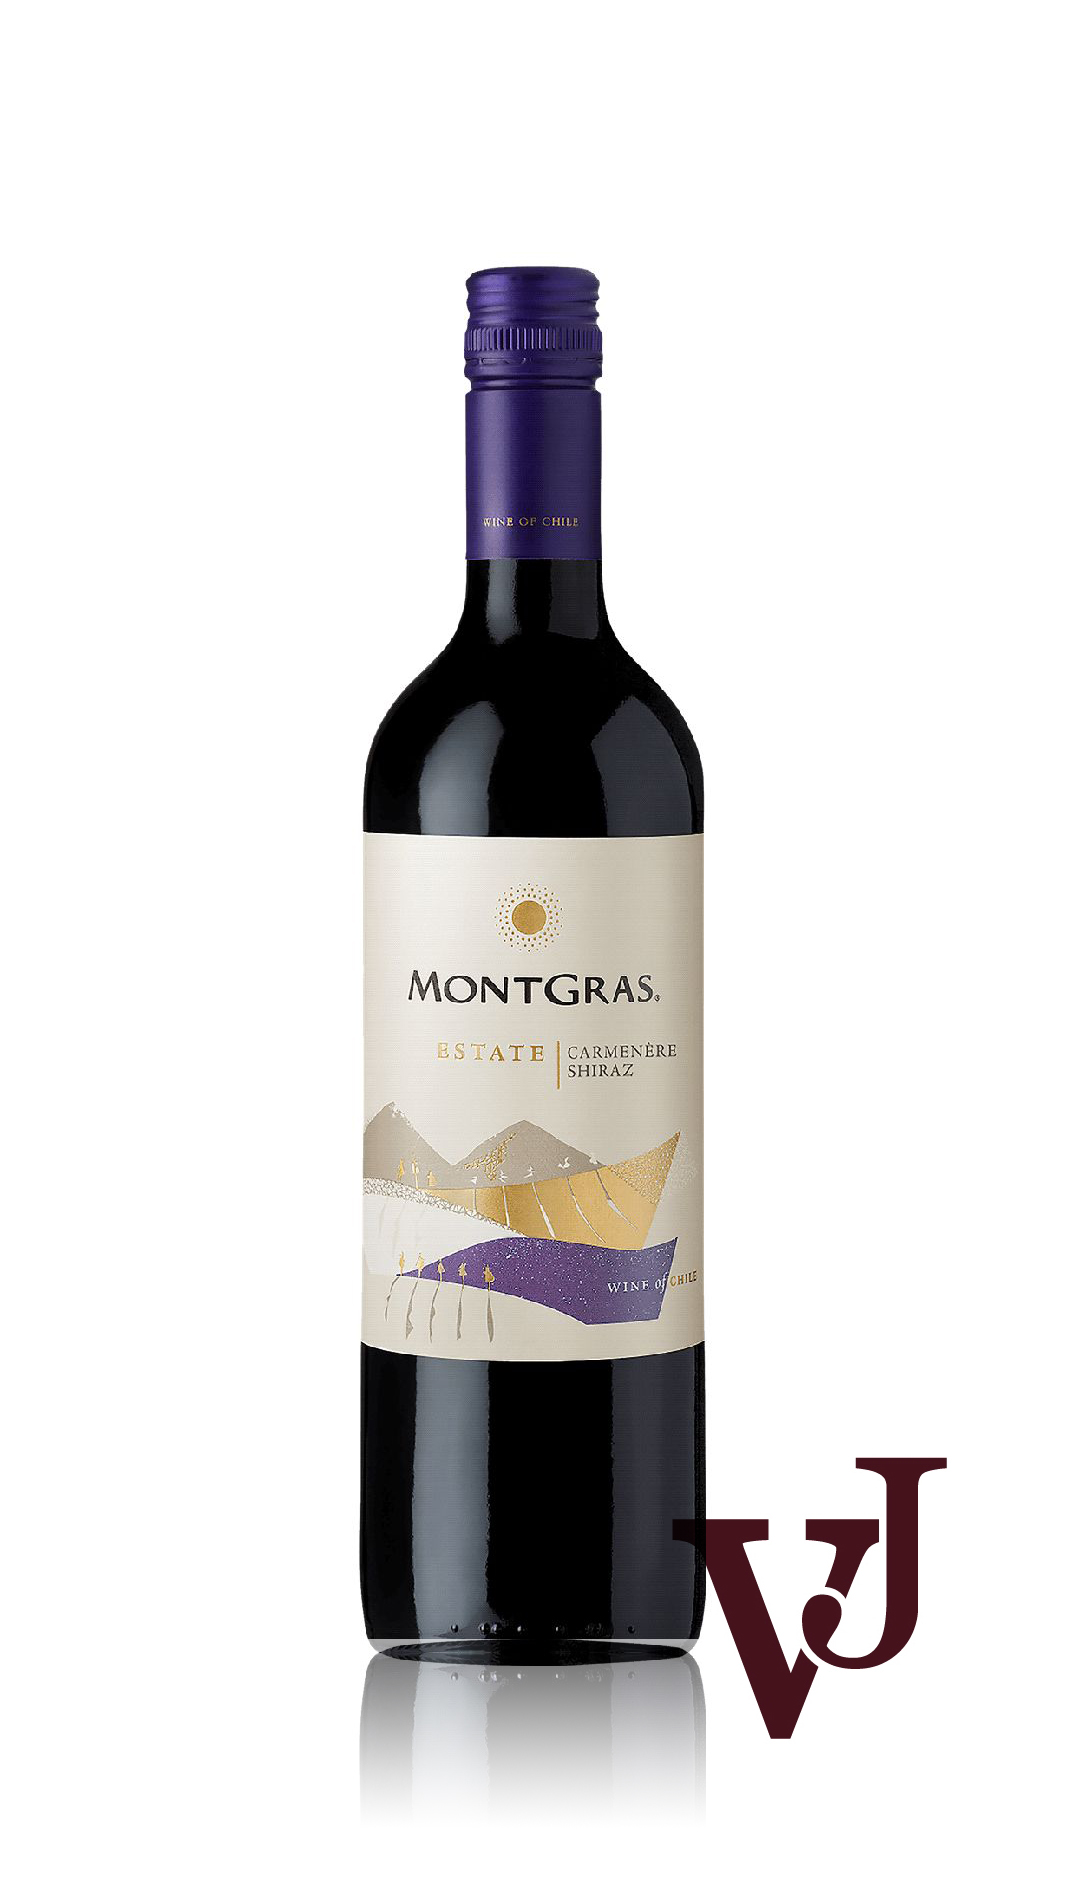 Rött Vin - MontGras Carmenère Shiraz artikel nummer 678001 från producenten MontGras från området Chile